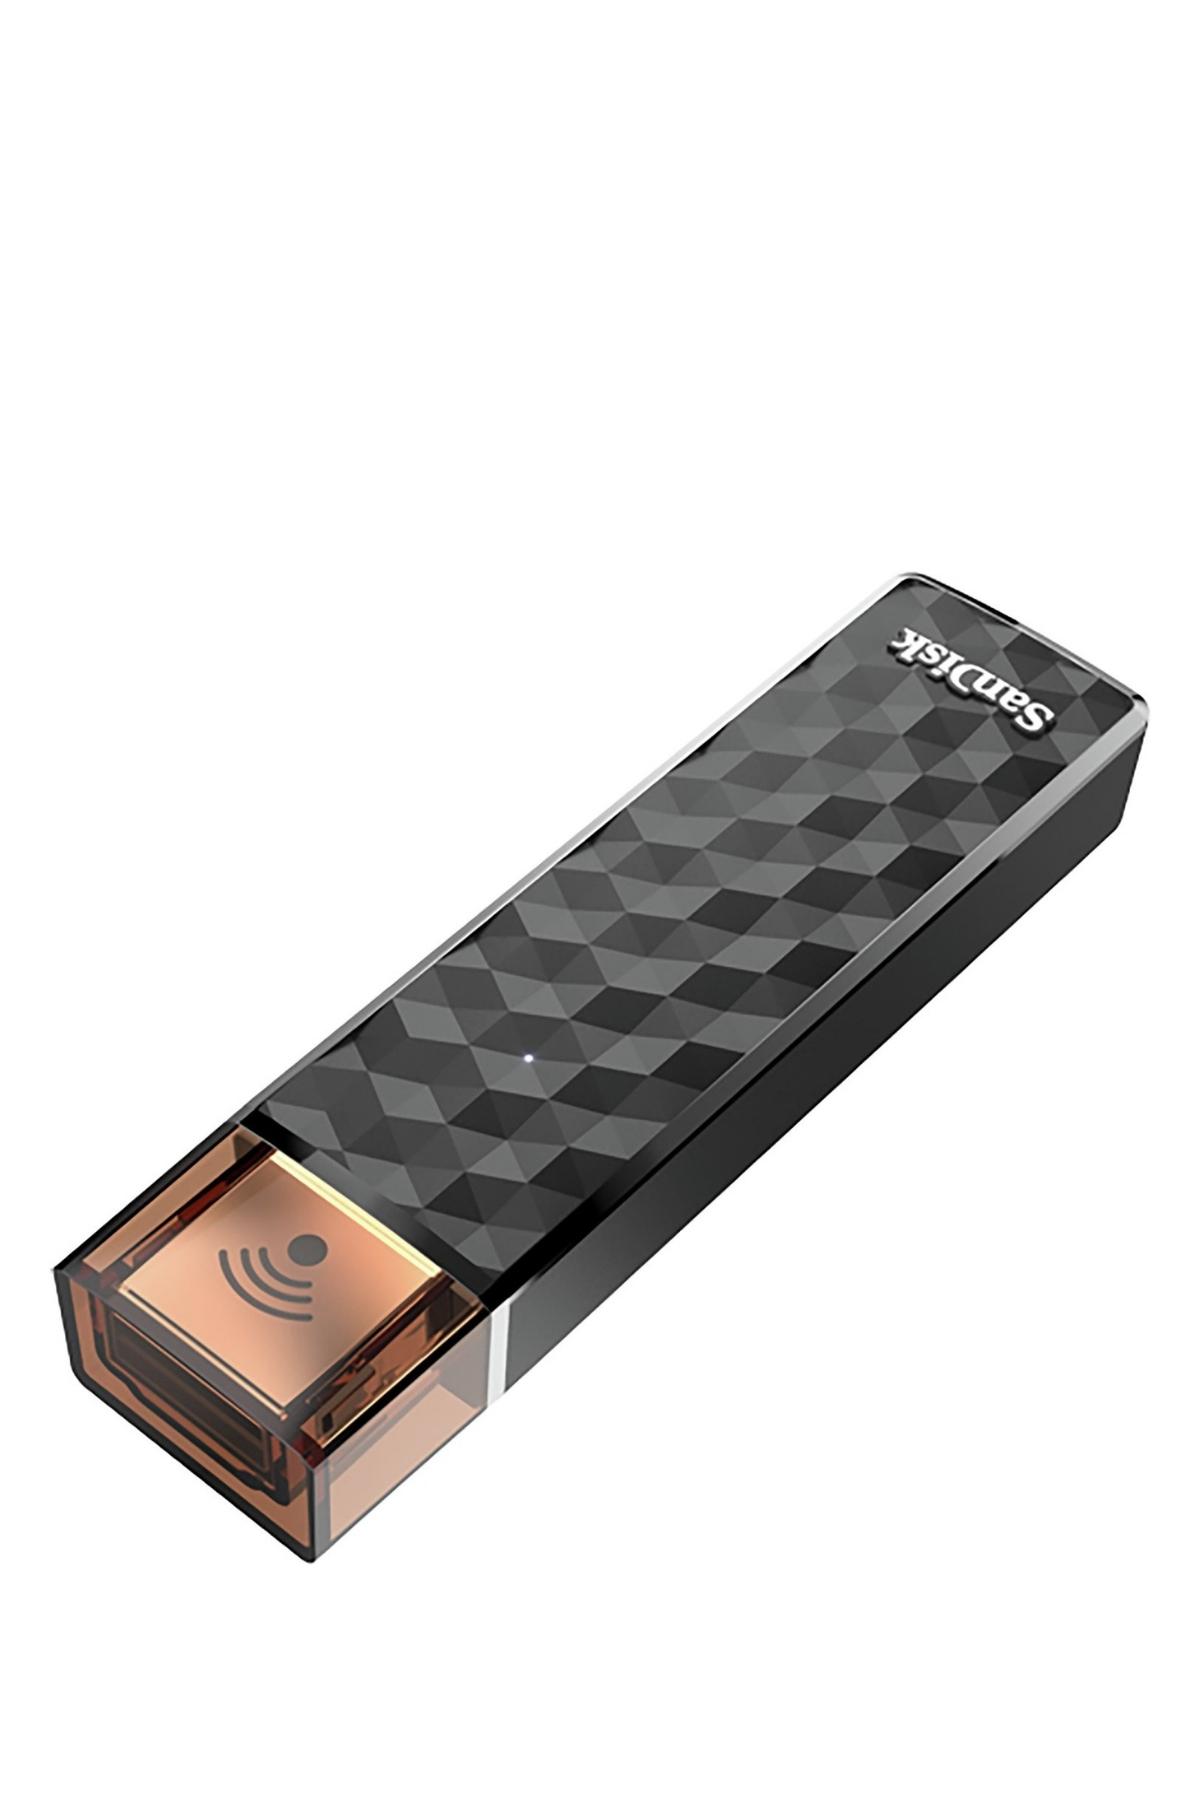 Sandisk Flash Bellek Kablosuz Bağlantı (32 GB) 